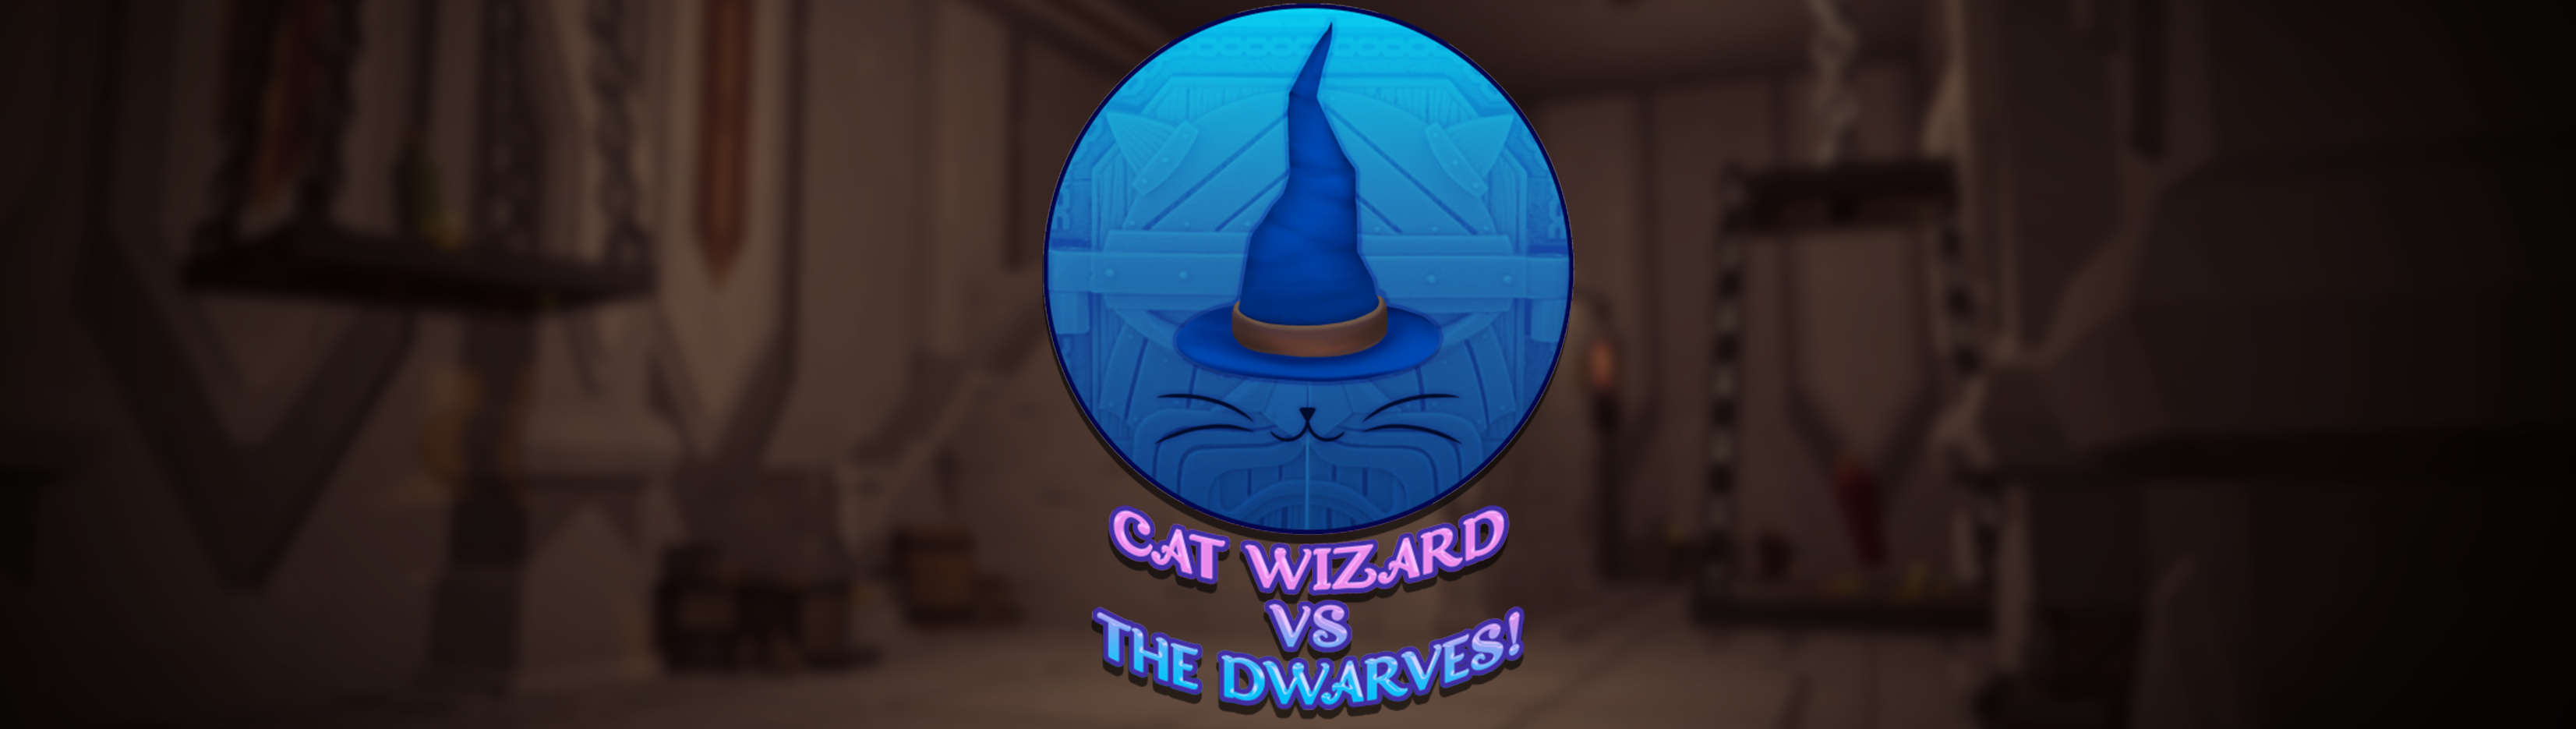 Cat Wizard vs The Dwarves